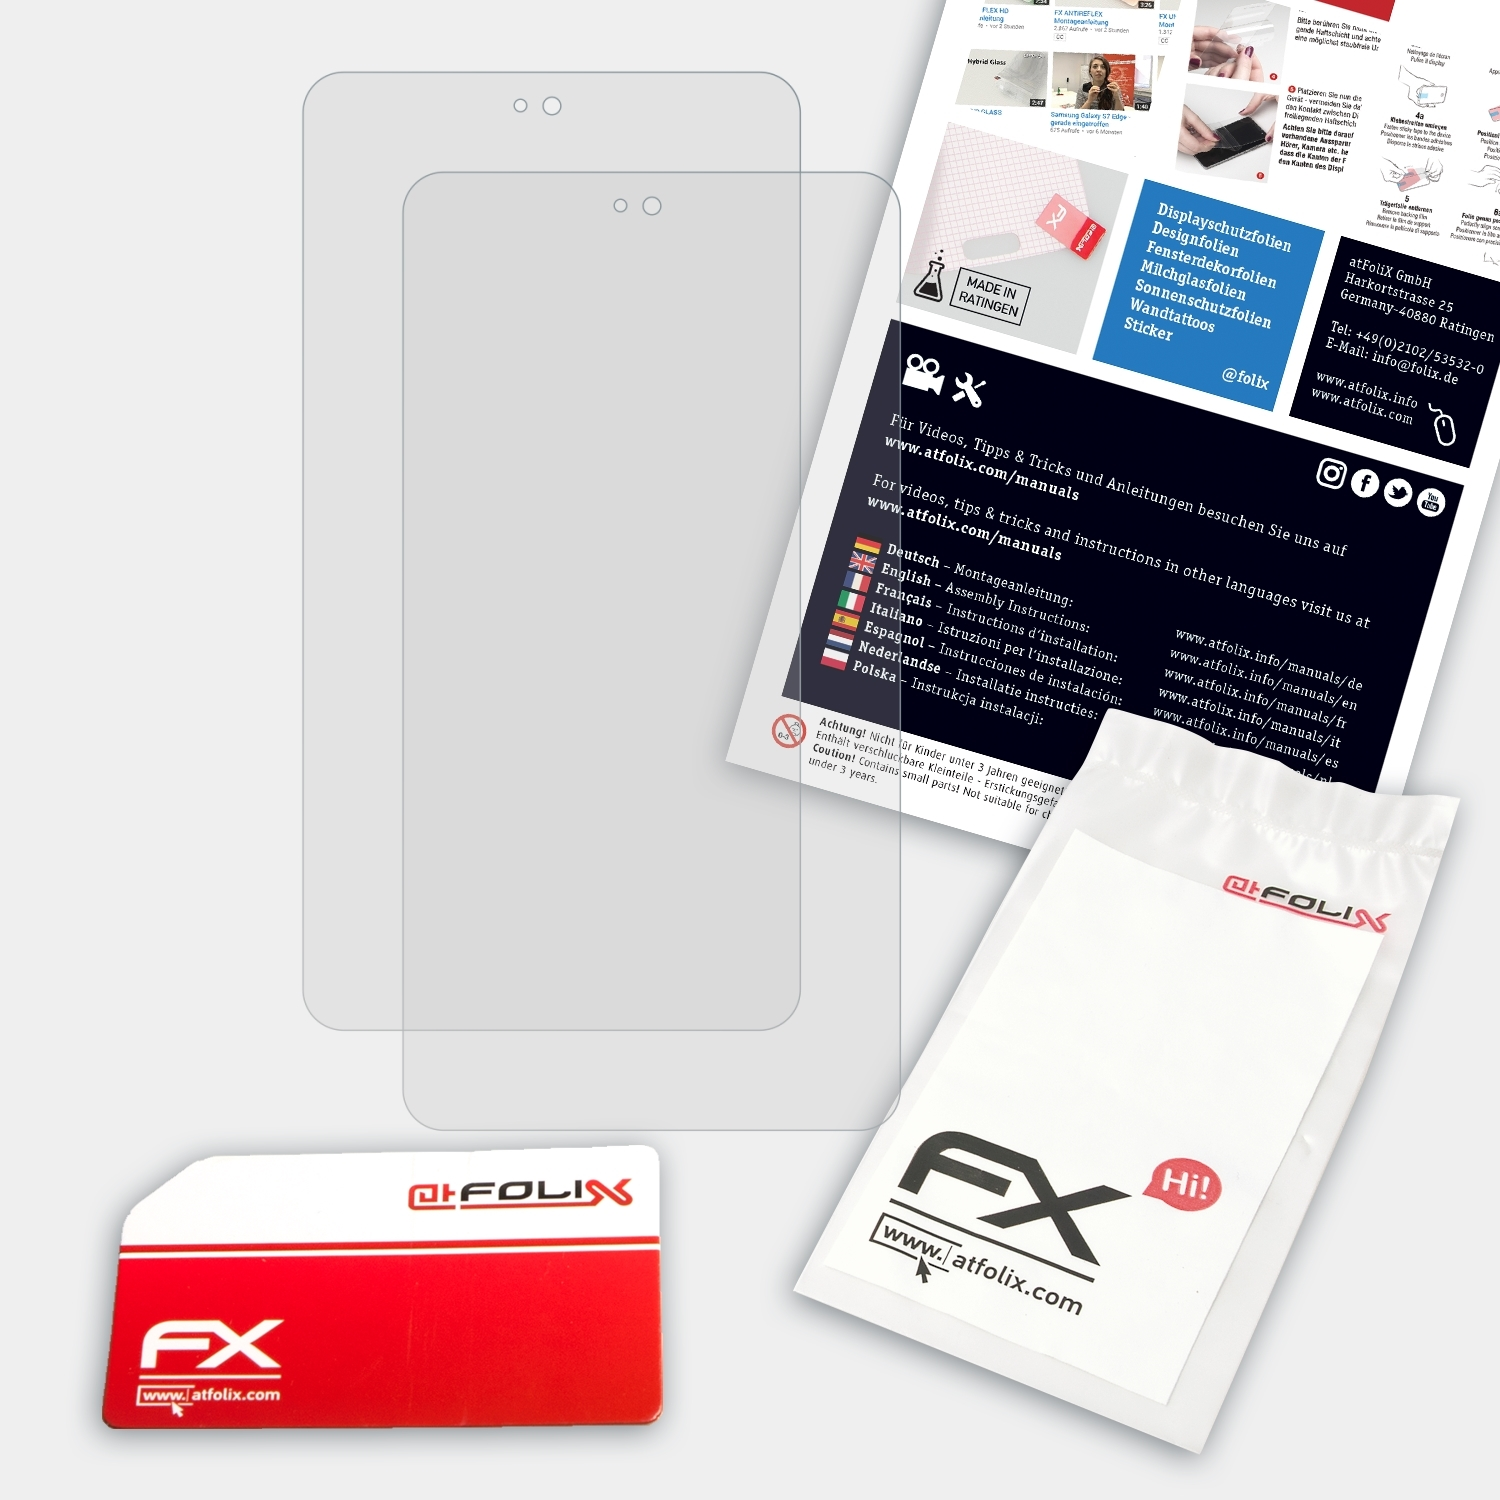 Displayschutz(für Iconia ATFOLIX 2x One (B1-790)) Acer FX-Antireflex 7